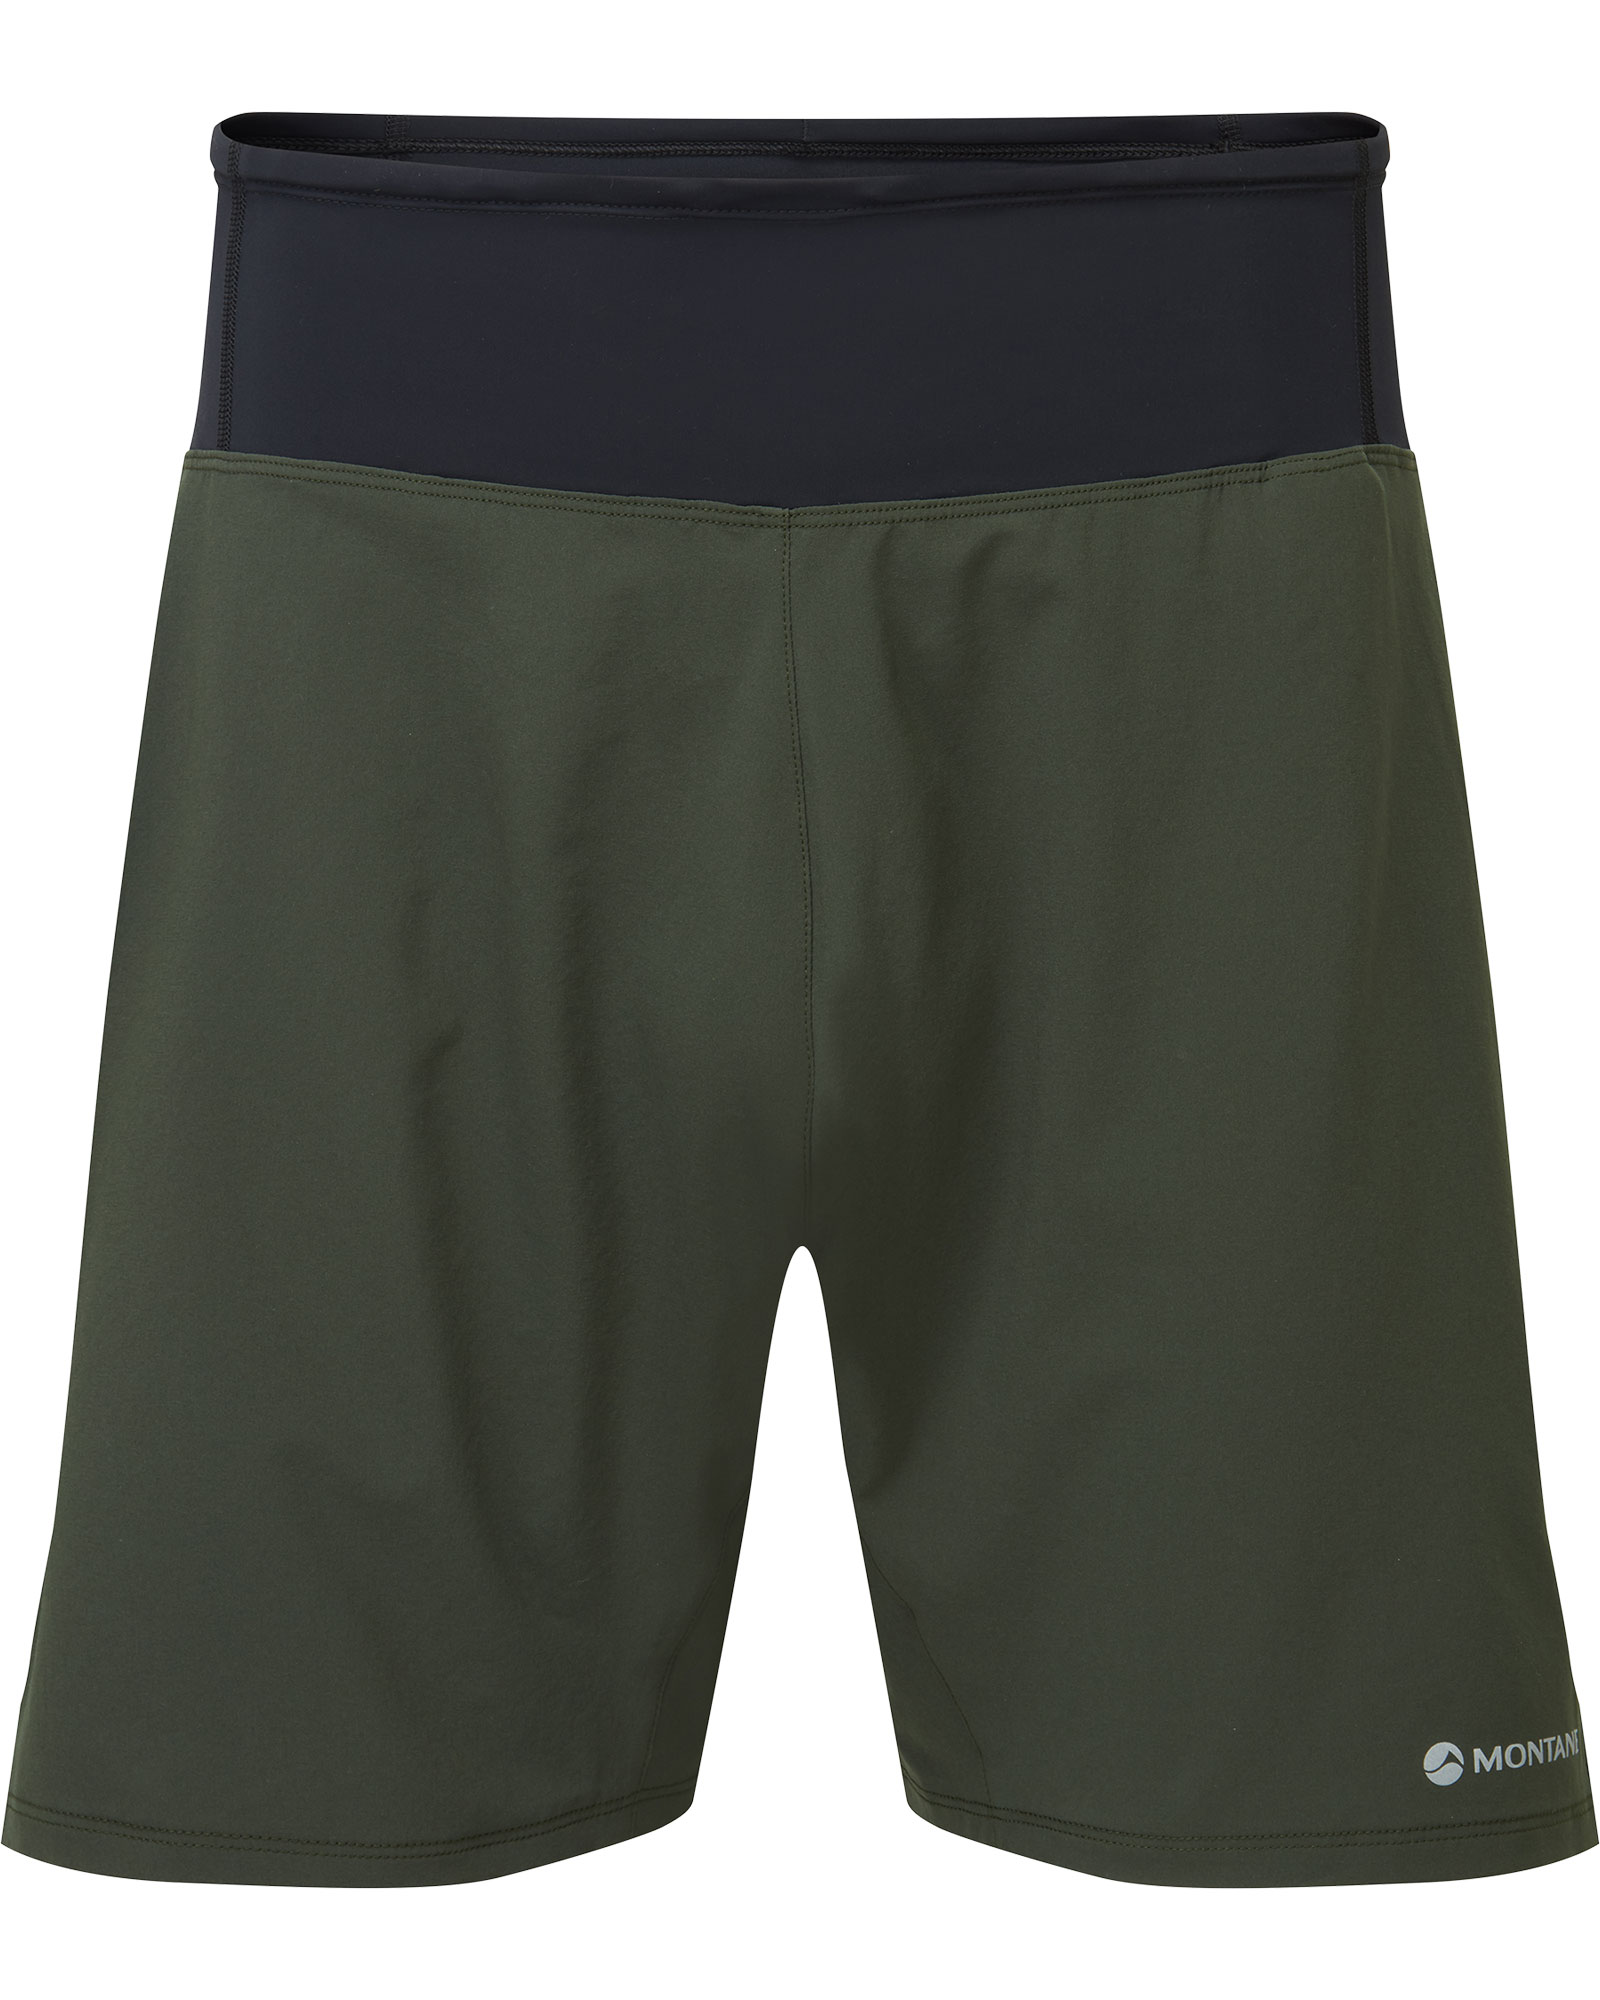 Montane Slipstream Men’s 7" Shorts - Oak Green S